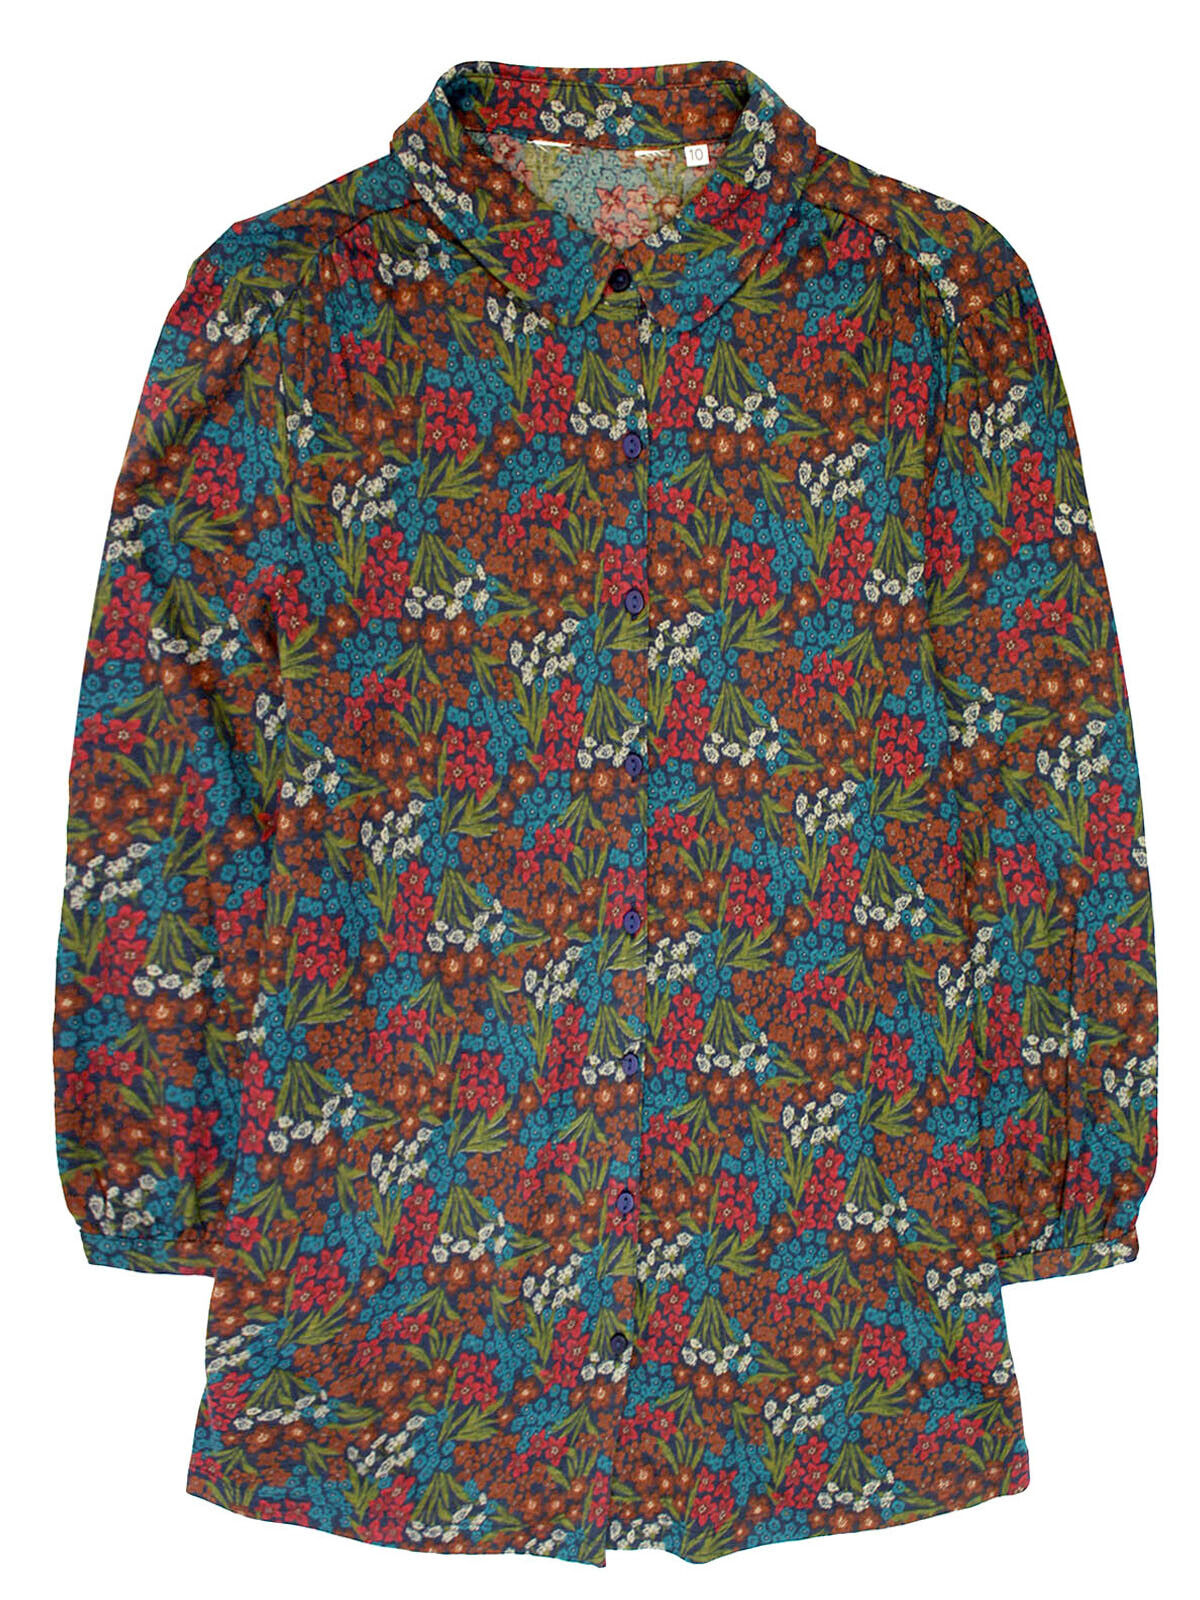 EX Seasalt Alpine Garden Mix Embrace 3/4 Sleeve Jersey Shirt 10-28 RRP £45.95